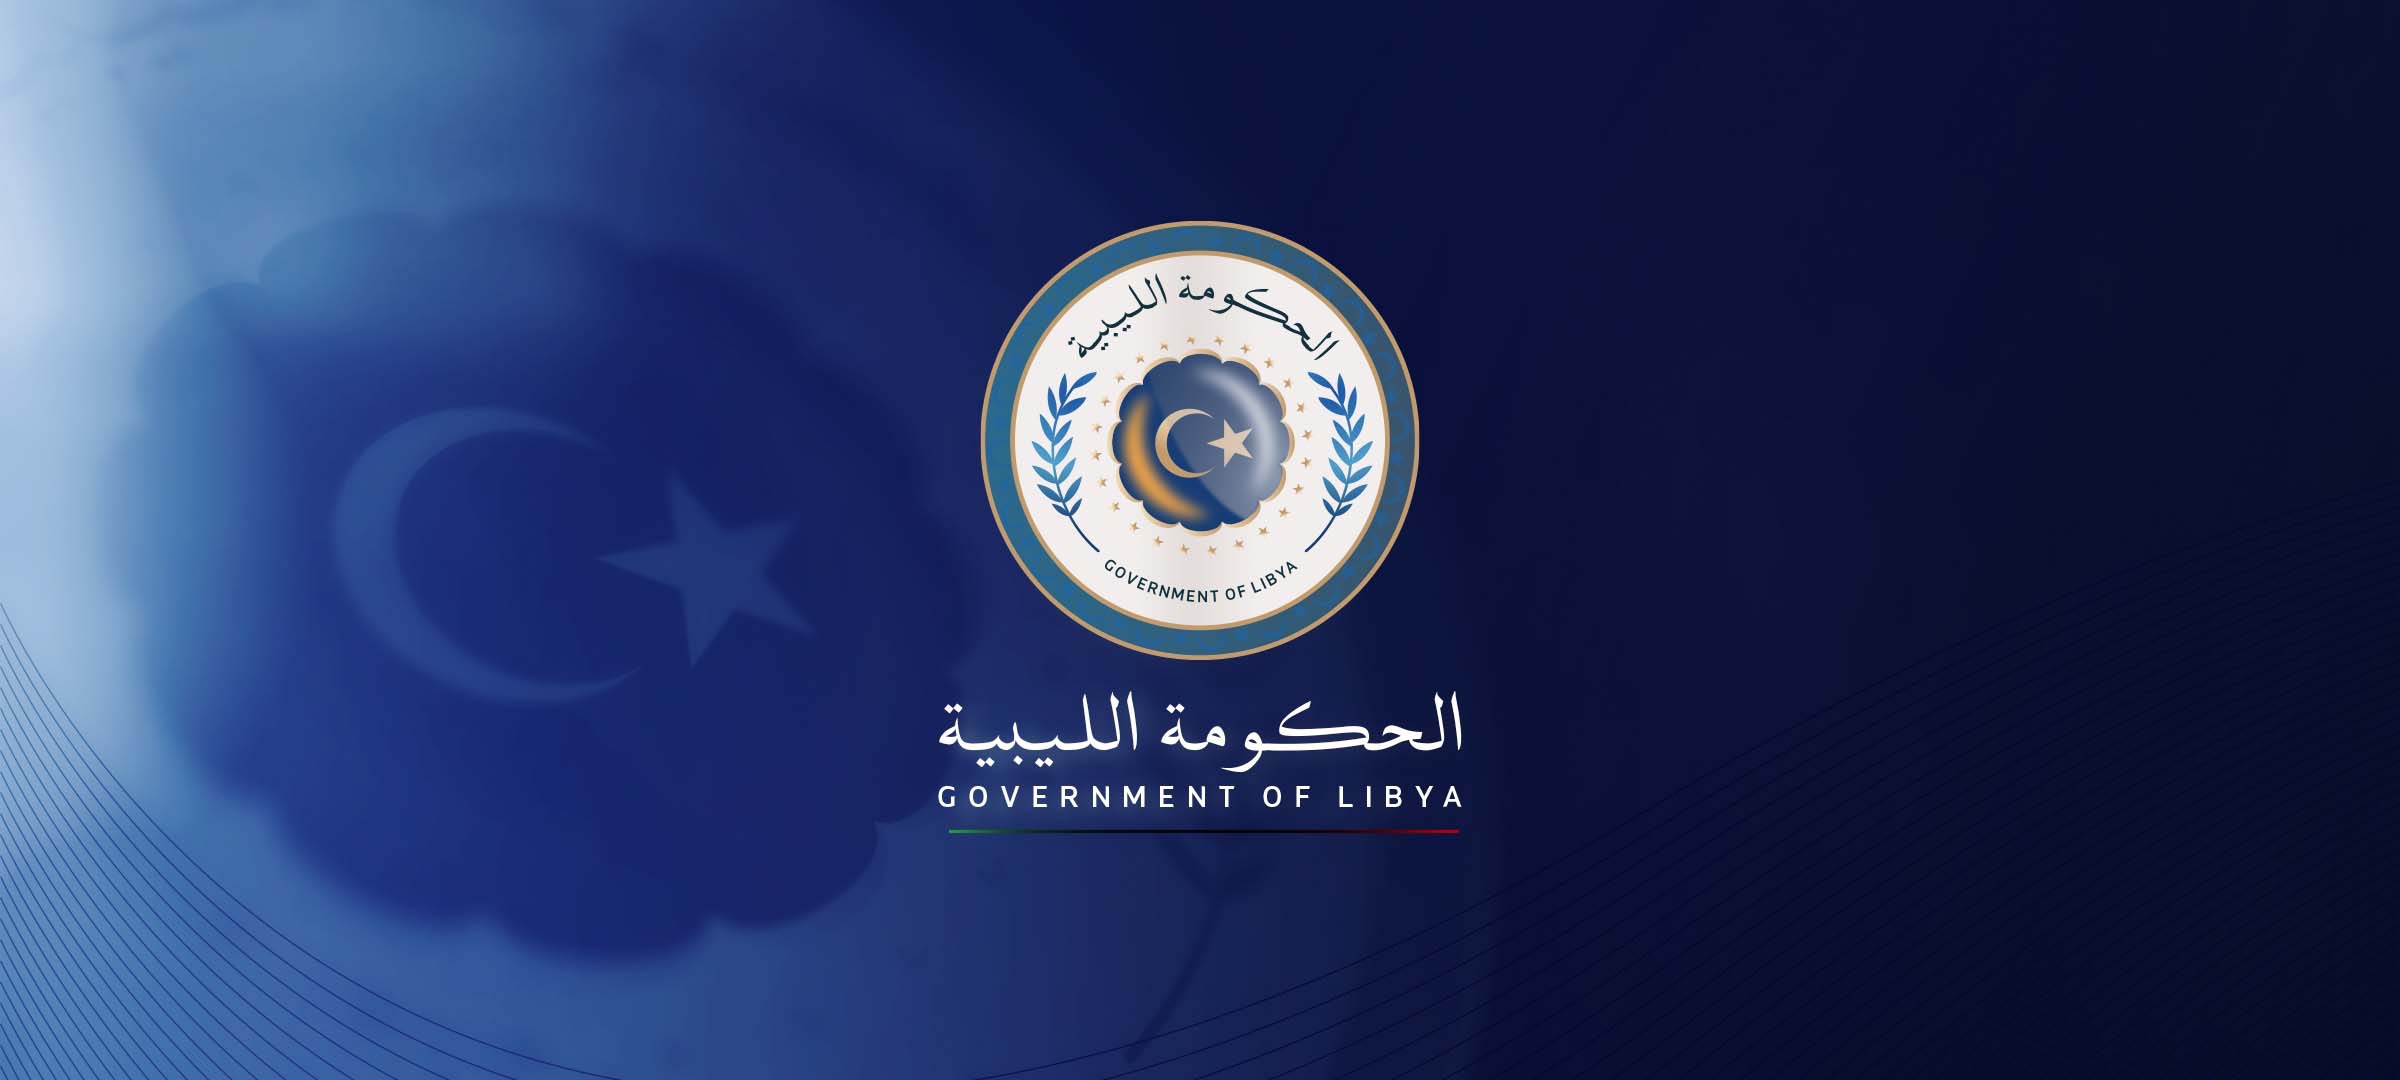  الحكومة الليبية تعلن أماكن توزيع كميات جديدة من البيض واللحوم المستوردة